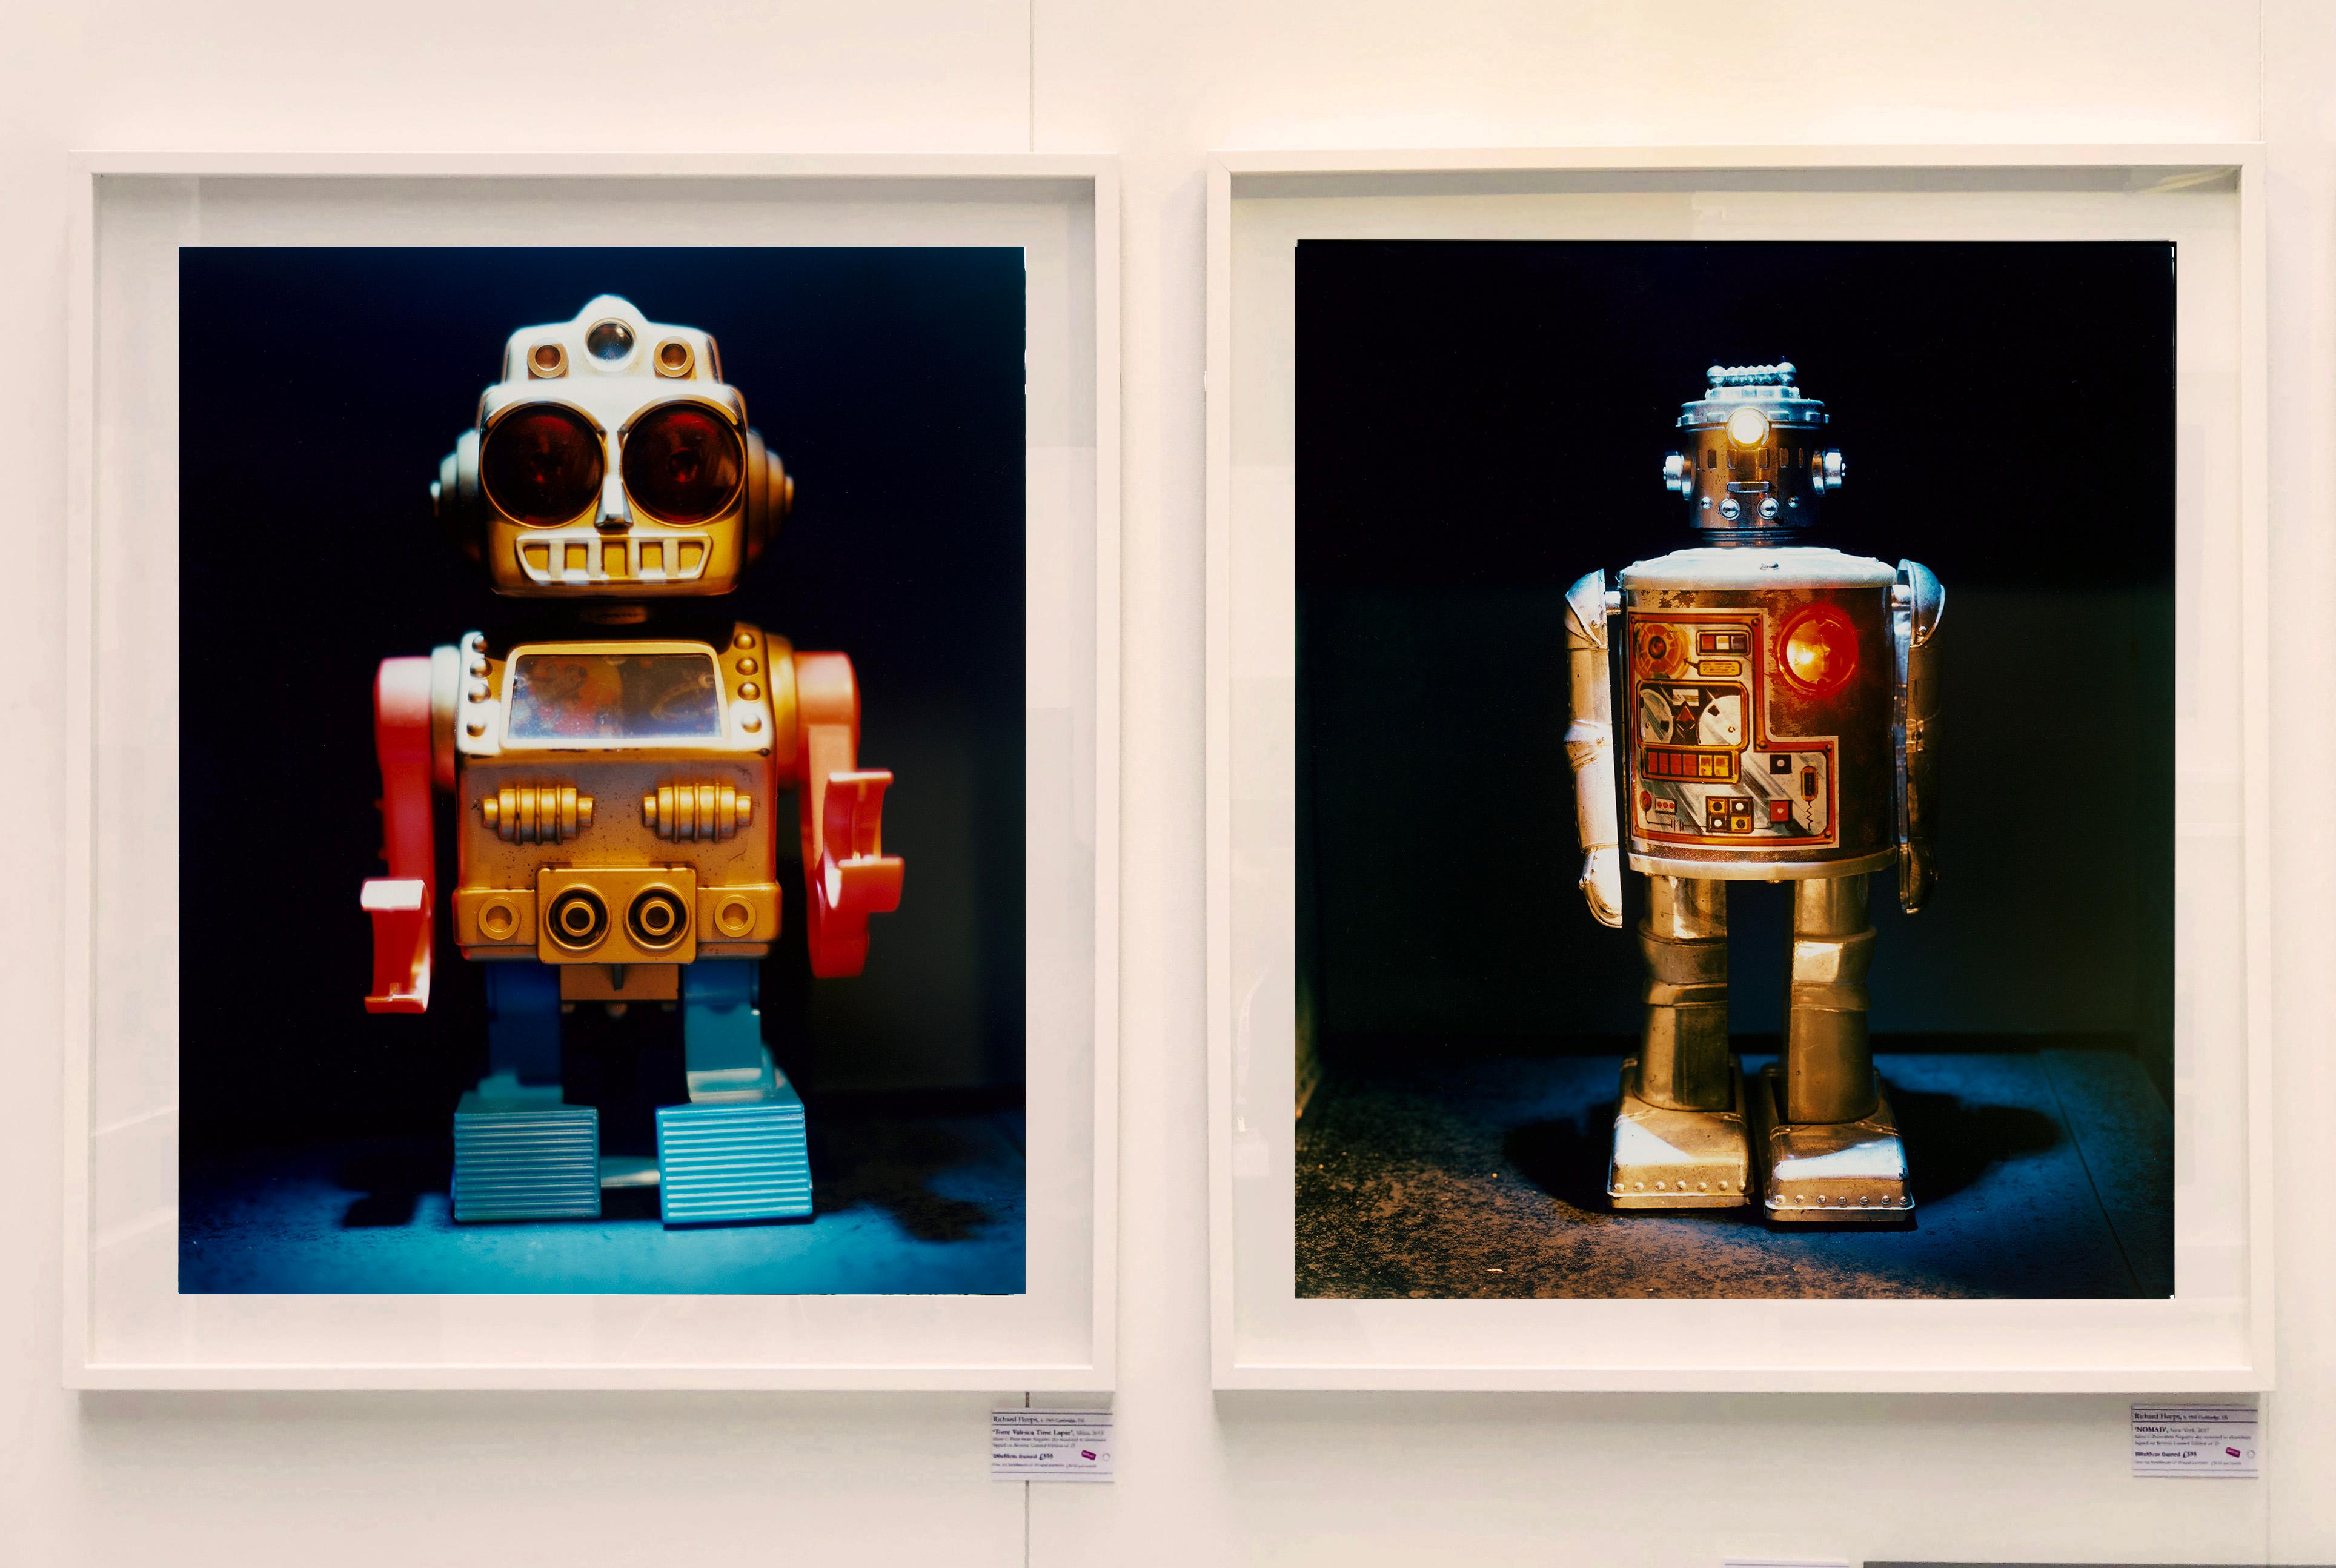 Dark Bot, Natasha Heidler donne vie aux jouets préférés des enfants dans ses photographies conceptuelles.

Cette œuvre d'art est une édition limitée à 25 exemplaires. Il s'agit d'un tirage photographique brillant, monté à sec sur de l'aluminium,